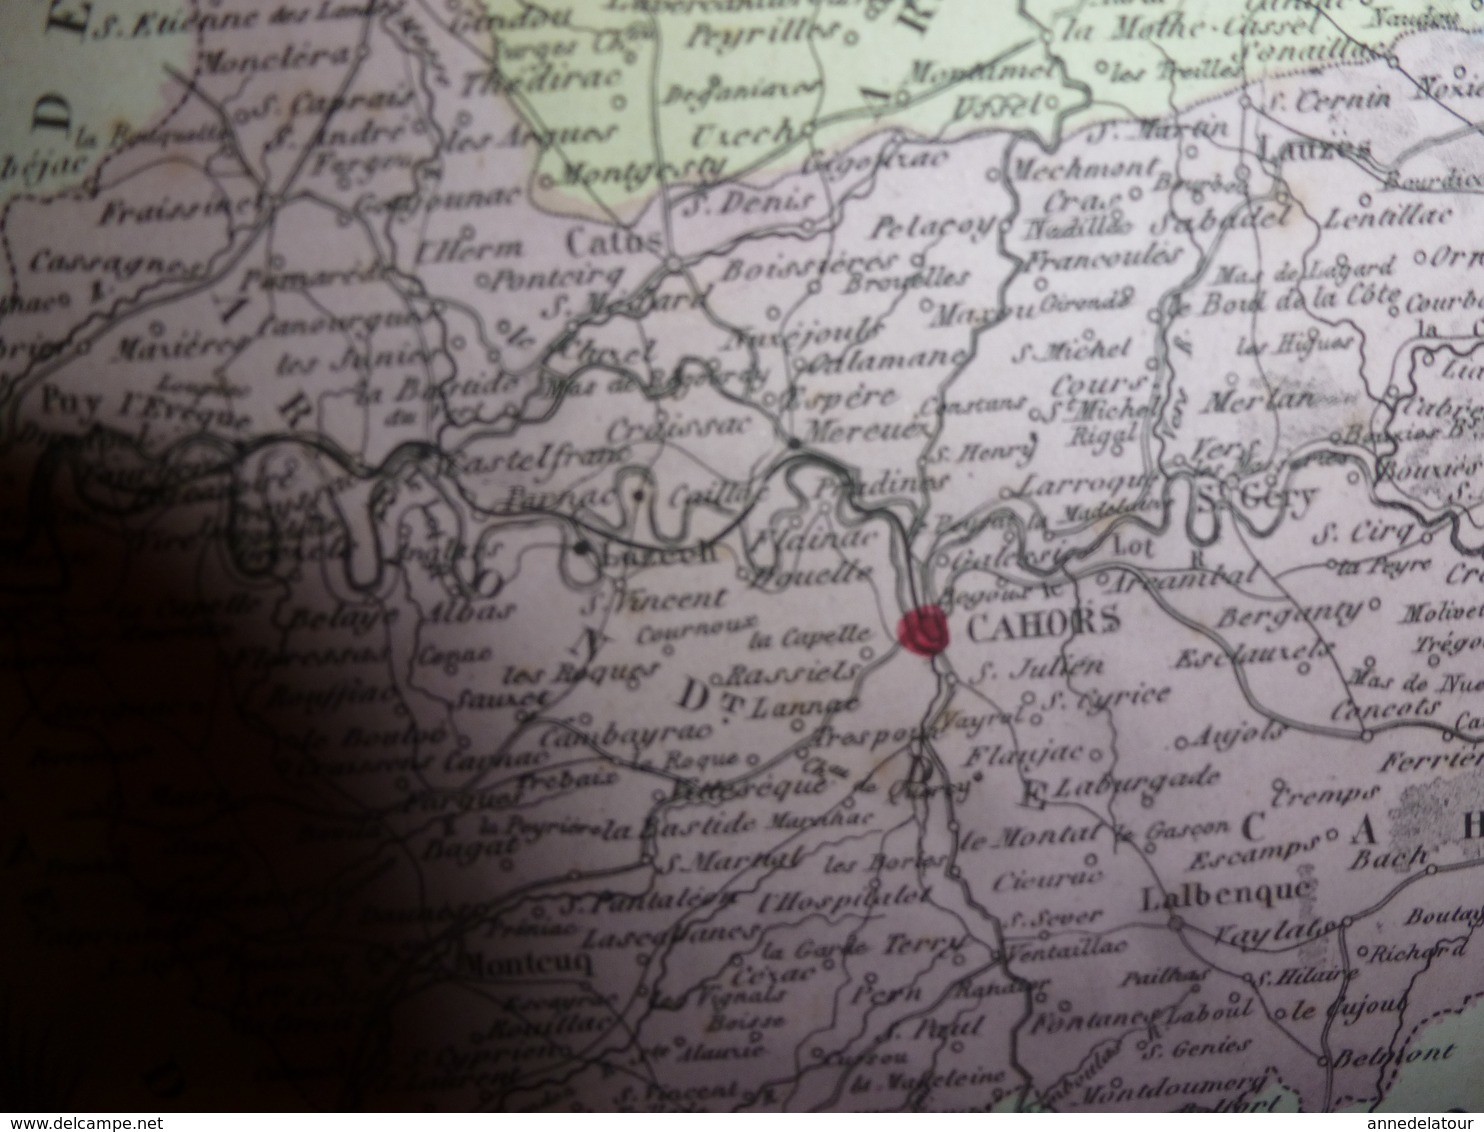 1880 LOT (Cahors,Figeac,Gourdon,Bretenoux,Livernon,Lalbenque,Luzech,etc) Carte Géo-Descriptive:Edition Migeon,géograph - Cartes Géographiques